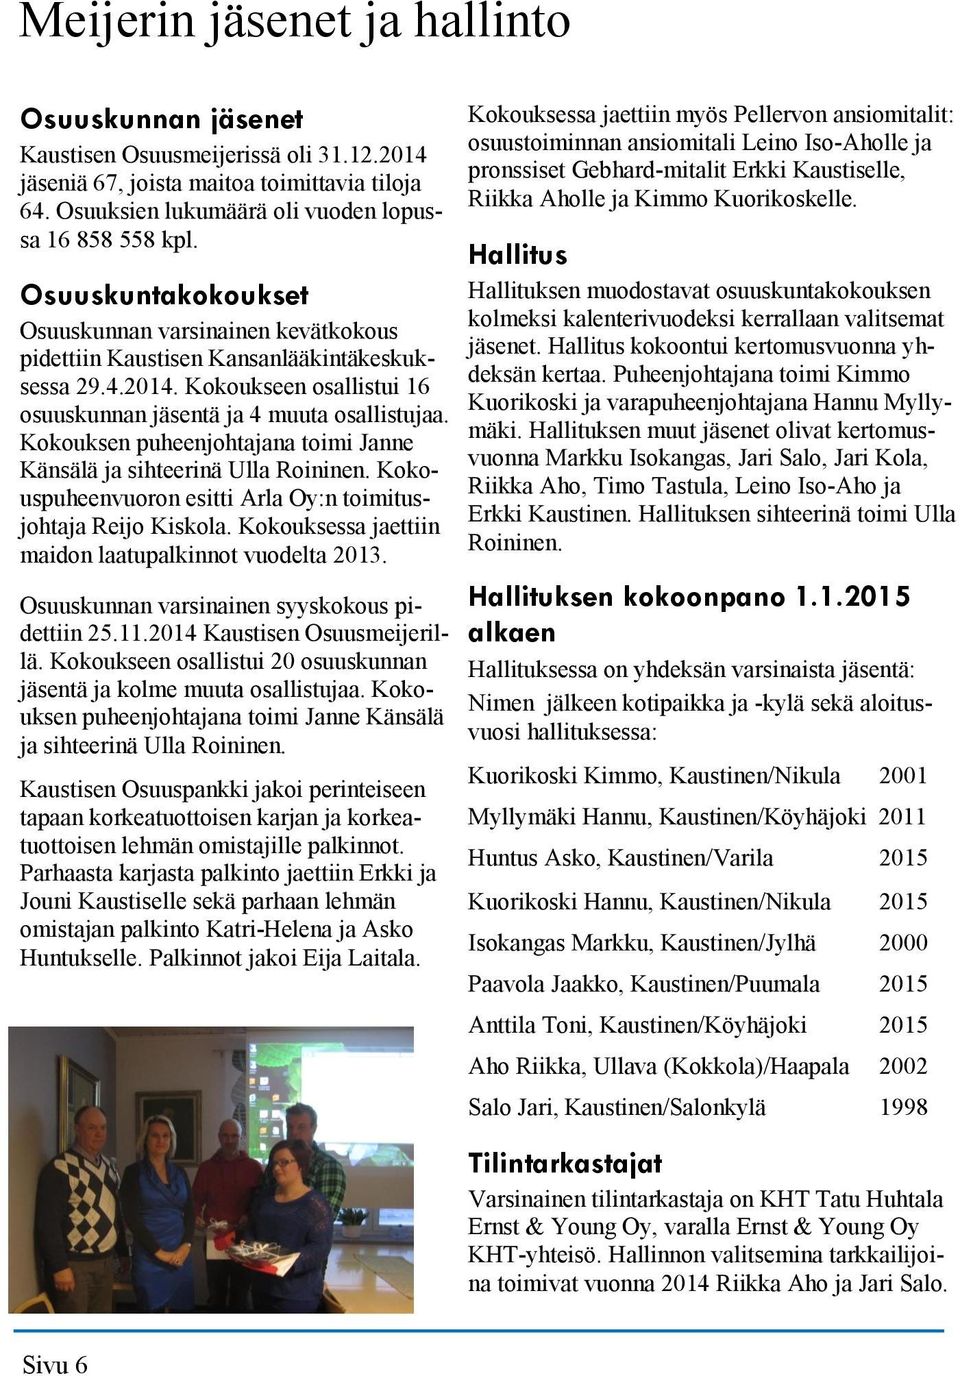 Kokouksen puheenjohtajana toimi Janne Känsälä ja sihteerinä Ulla Roininen. Kokouspuheenvuoron esitti Arla Oy:n toimitusjohtaja Reijo Kiskola. Kokouksessa jaettiin maidon laatupalkinnot vuodelta 2013.